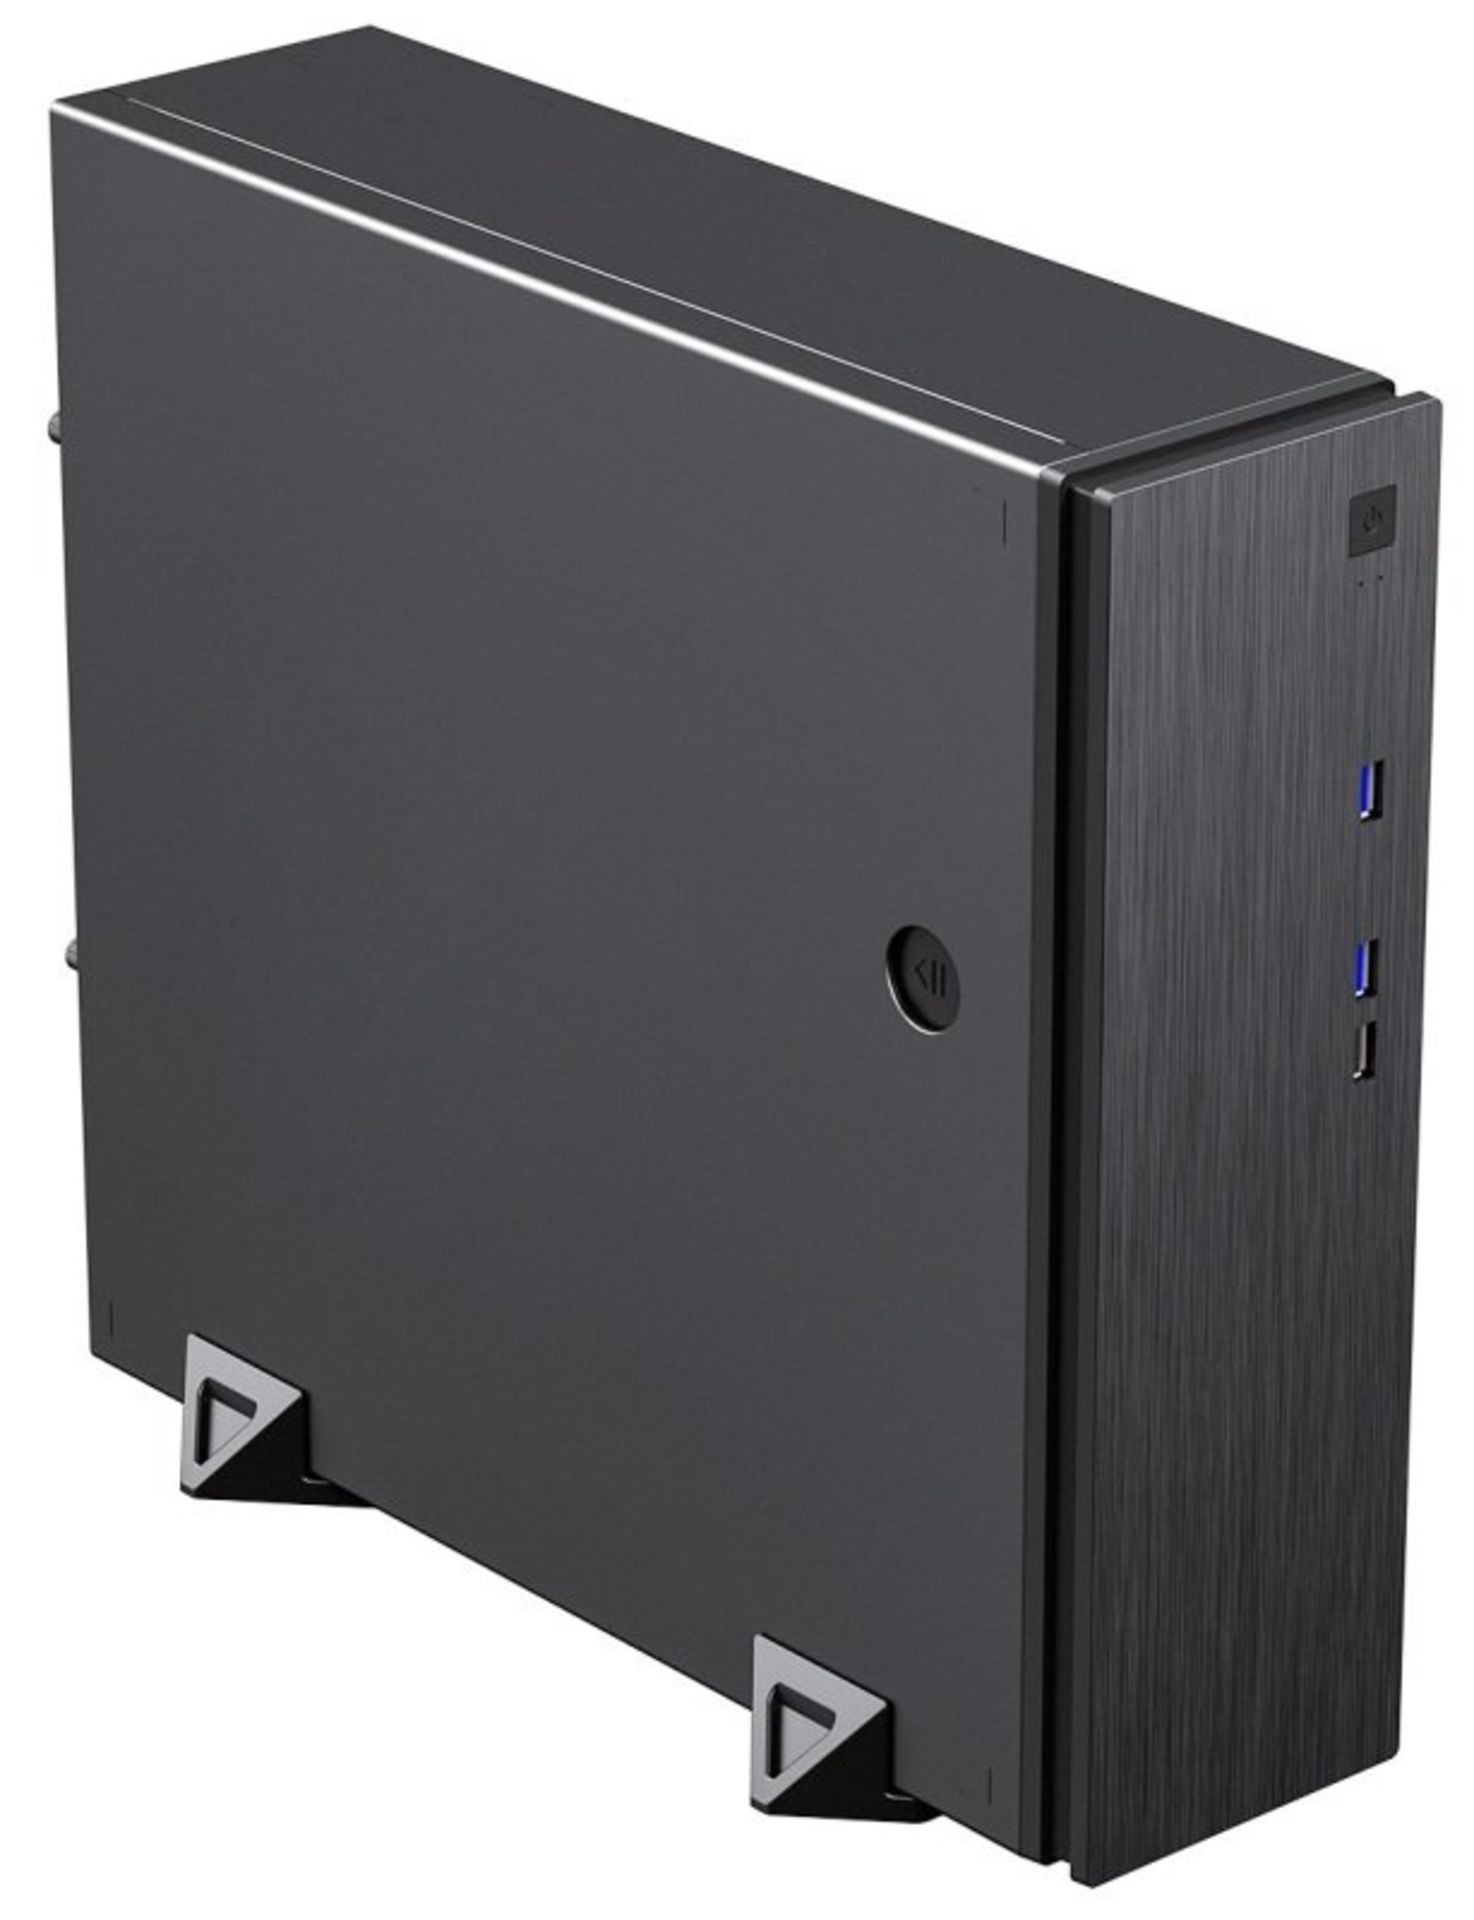 3x NEW & BOXED CIT S506 Micro ATX Desktop Case - BLACK. RRP £44.99 EACH. (PCK). The CiT S506 slim - Image 3 of 10